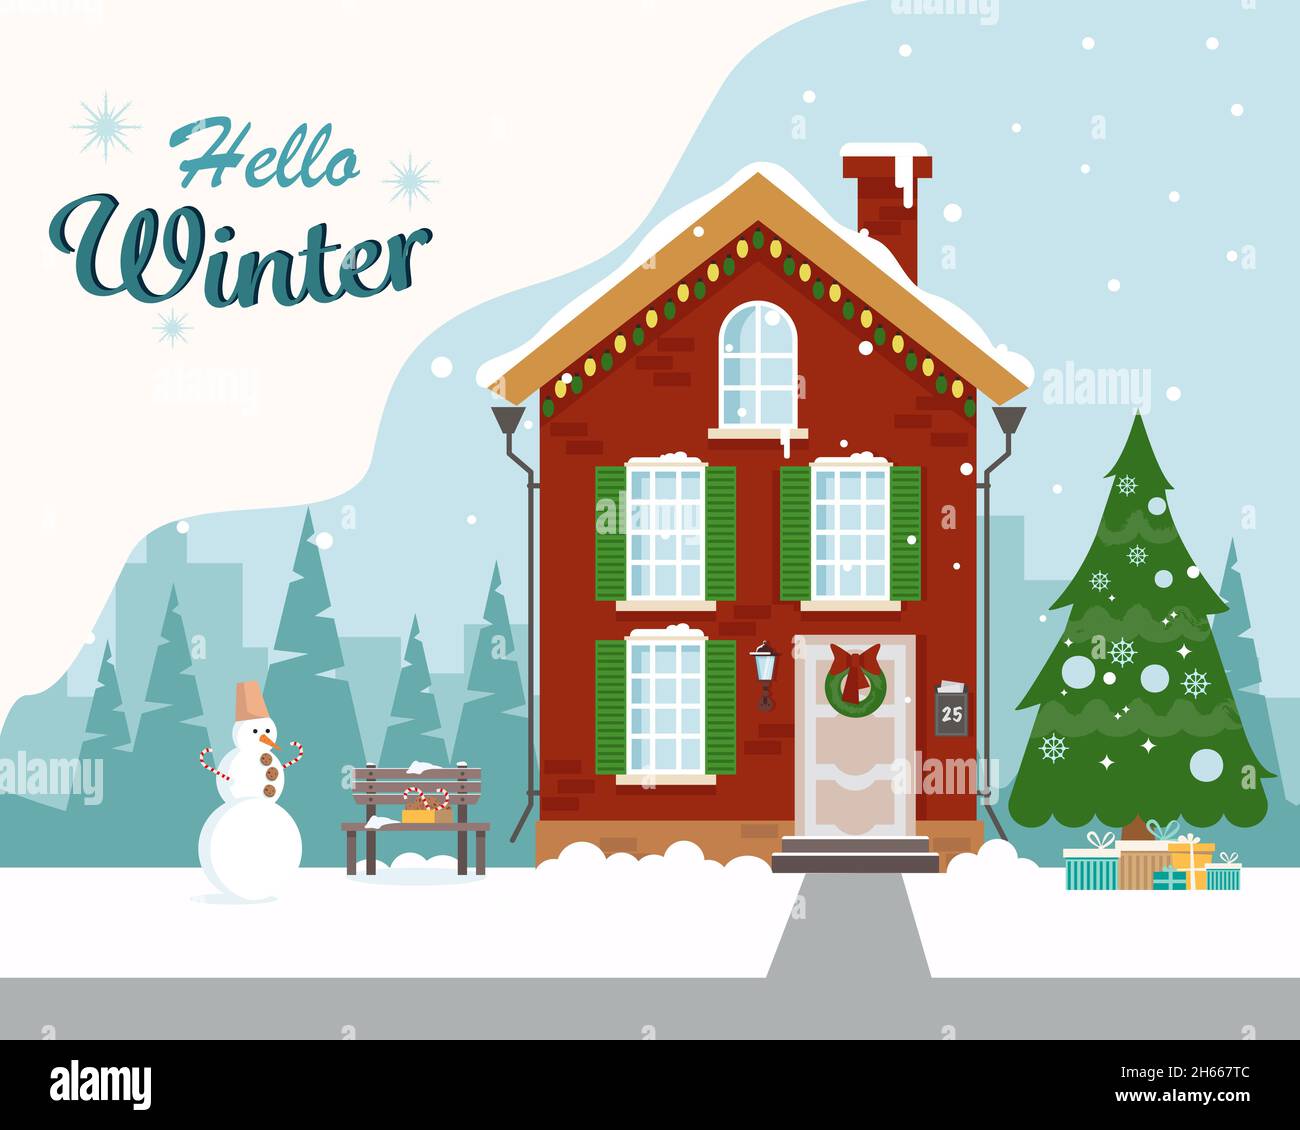 Ein schönes Haus für den Urlaub mit einem Weihnachtsbaum, einer Bank, einem Schneemann und Geschenken dekoriert. Grußkarte. Hallo Winter. Vektorgrafik in f Stock Vektor